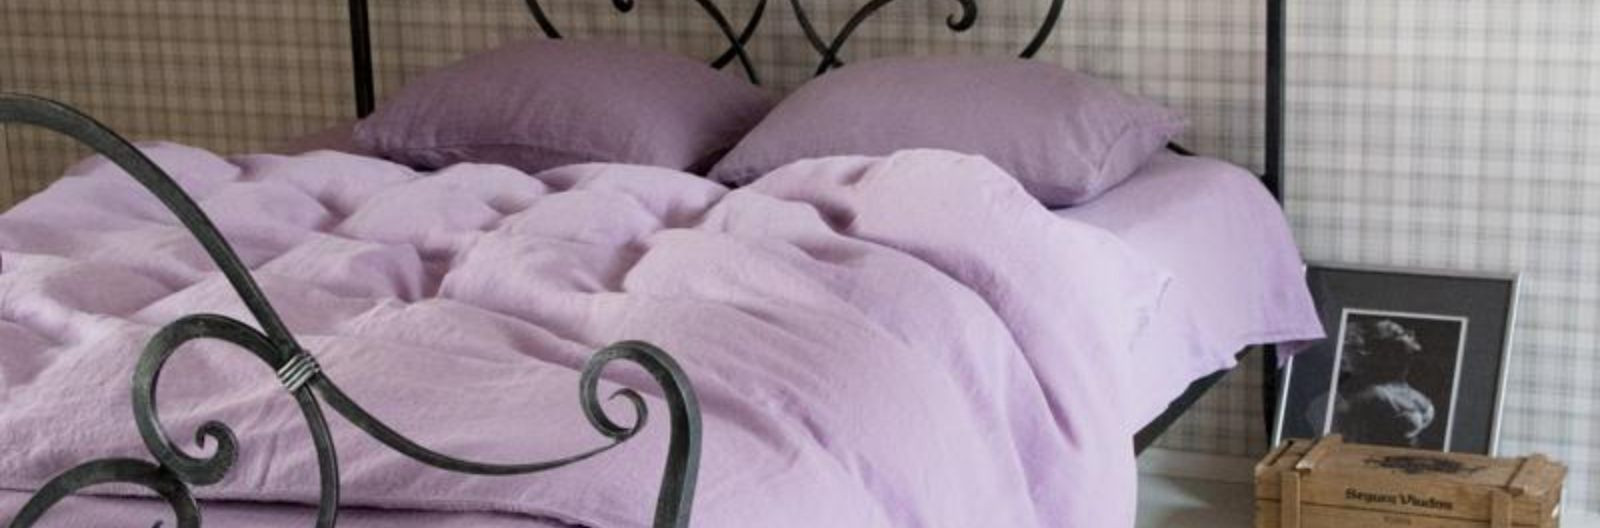 Kas otsite voodipesu, mis on loodud looduslikest materjalidest ja on väga pehme tekstuuriga? Siis olete jõudnud õigesse kohta! OMALINEN disainib ja valmistab kä